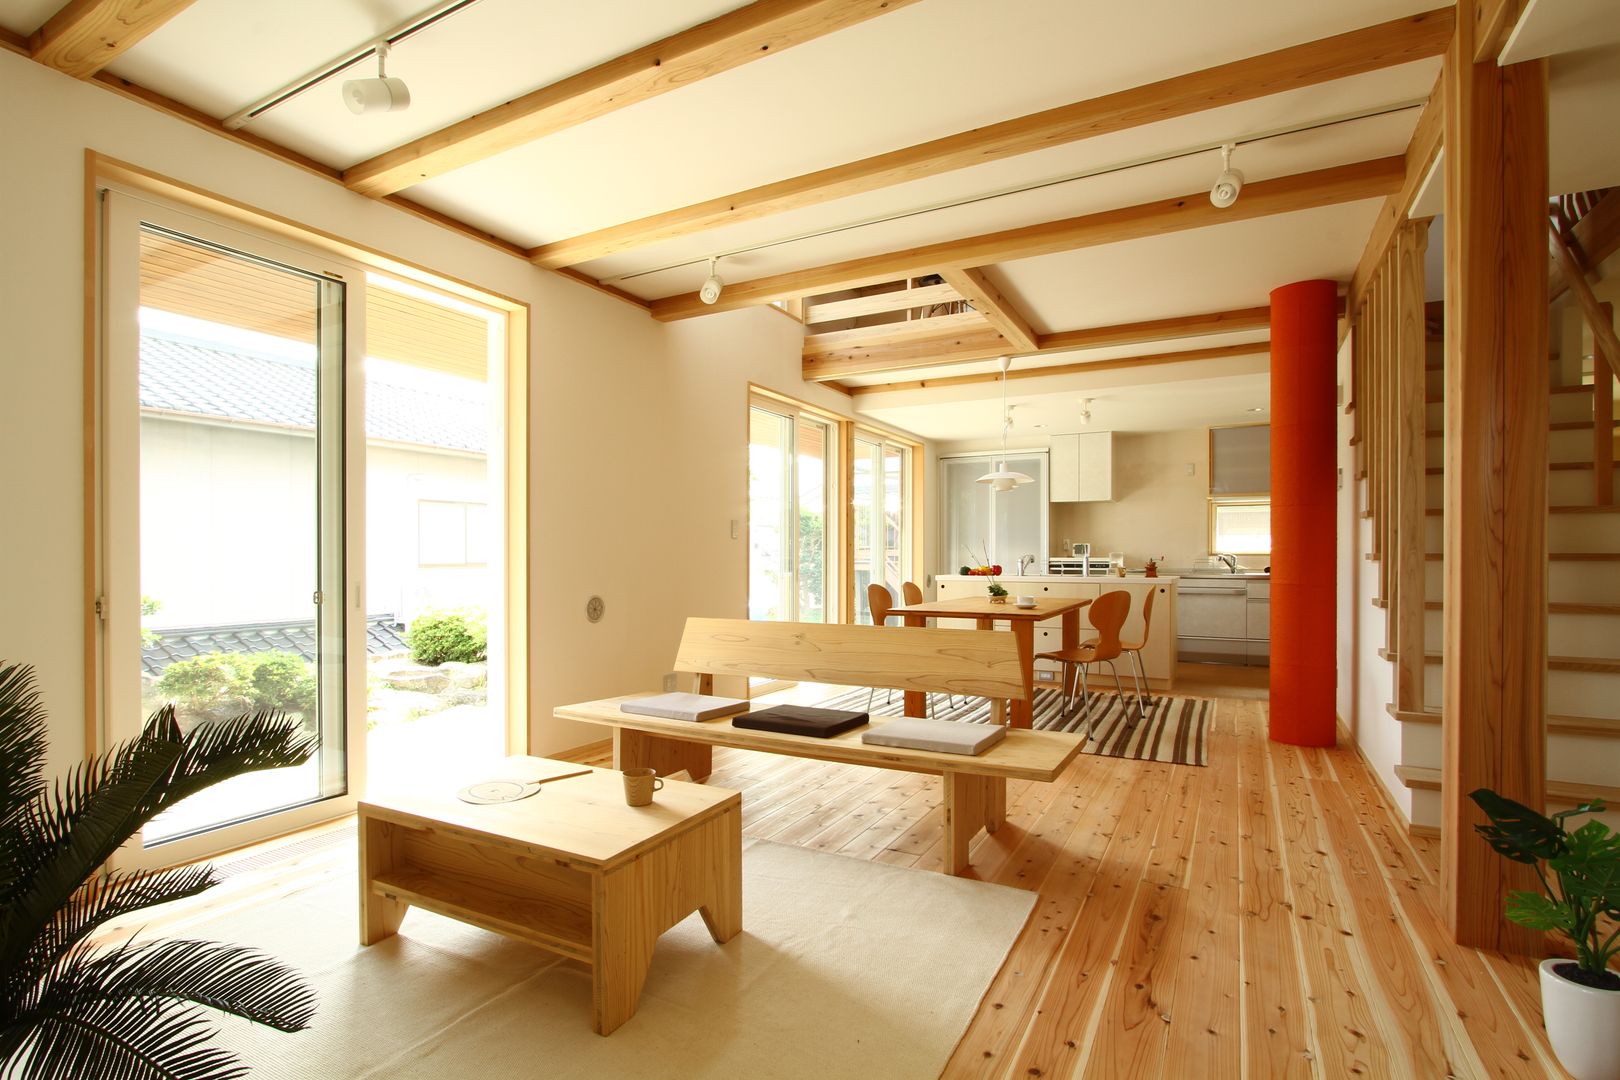 本山ドミノ, 有限会社 コアハウス 有限会社 コアハウス Asian style living room